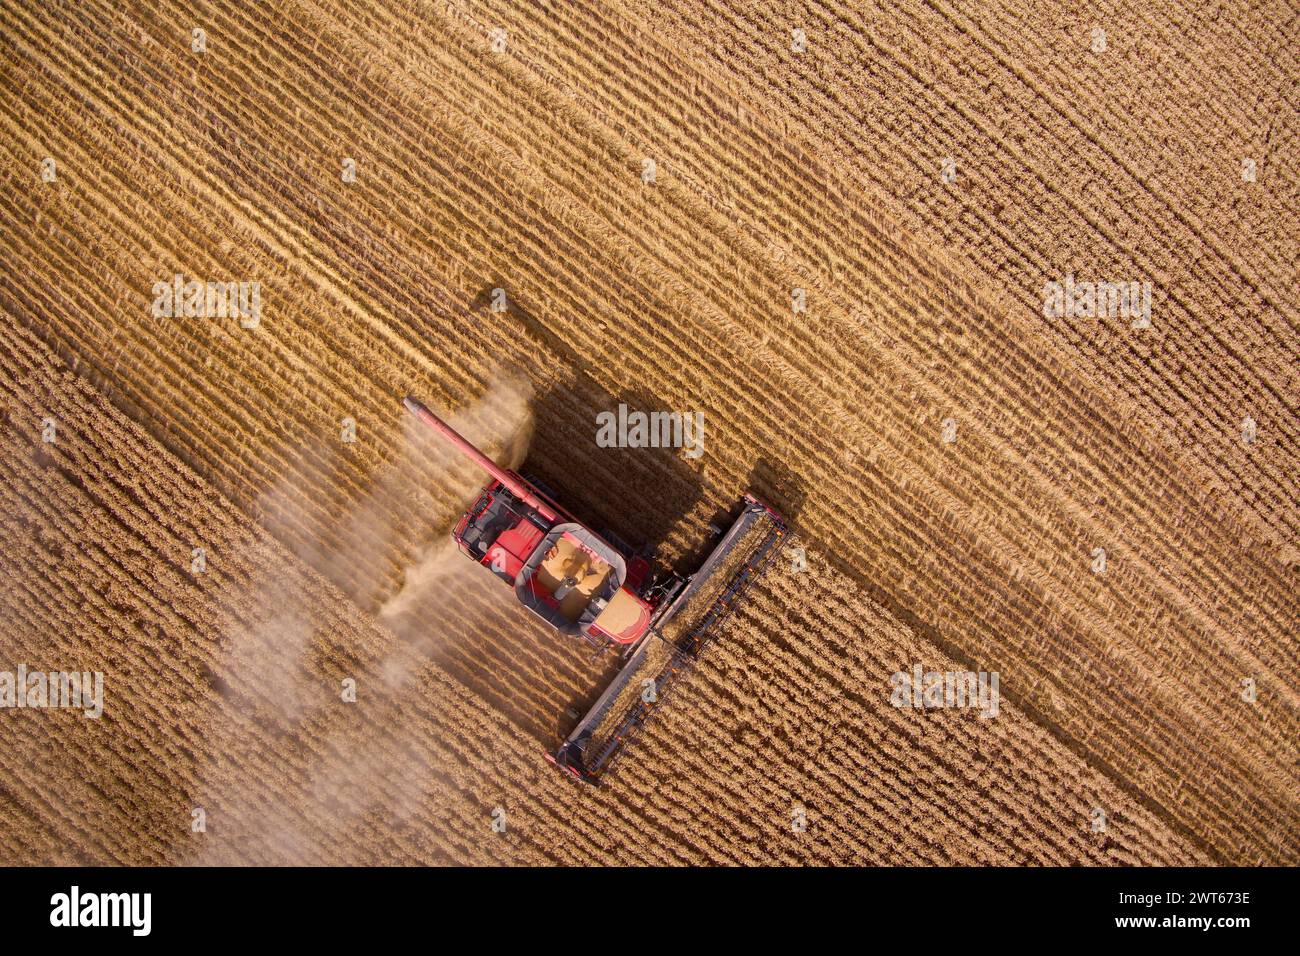 Luftlinie des Mähdreschers Weizenernte in der Nähe von Wallumbilla auf der Maranoa Queensland Australien Stockfoto